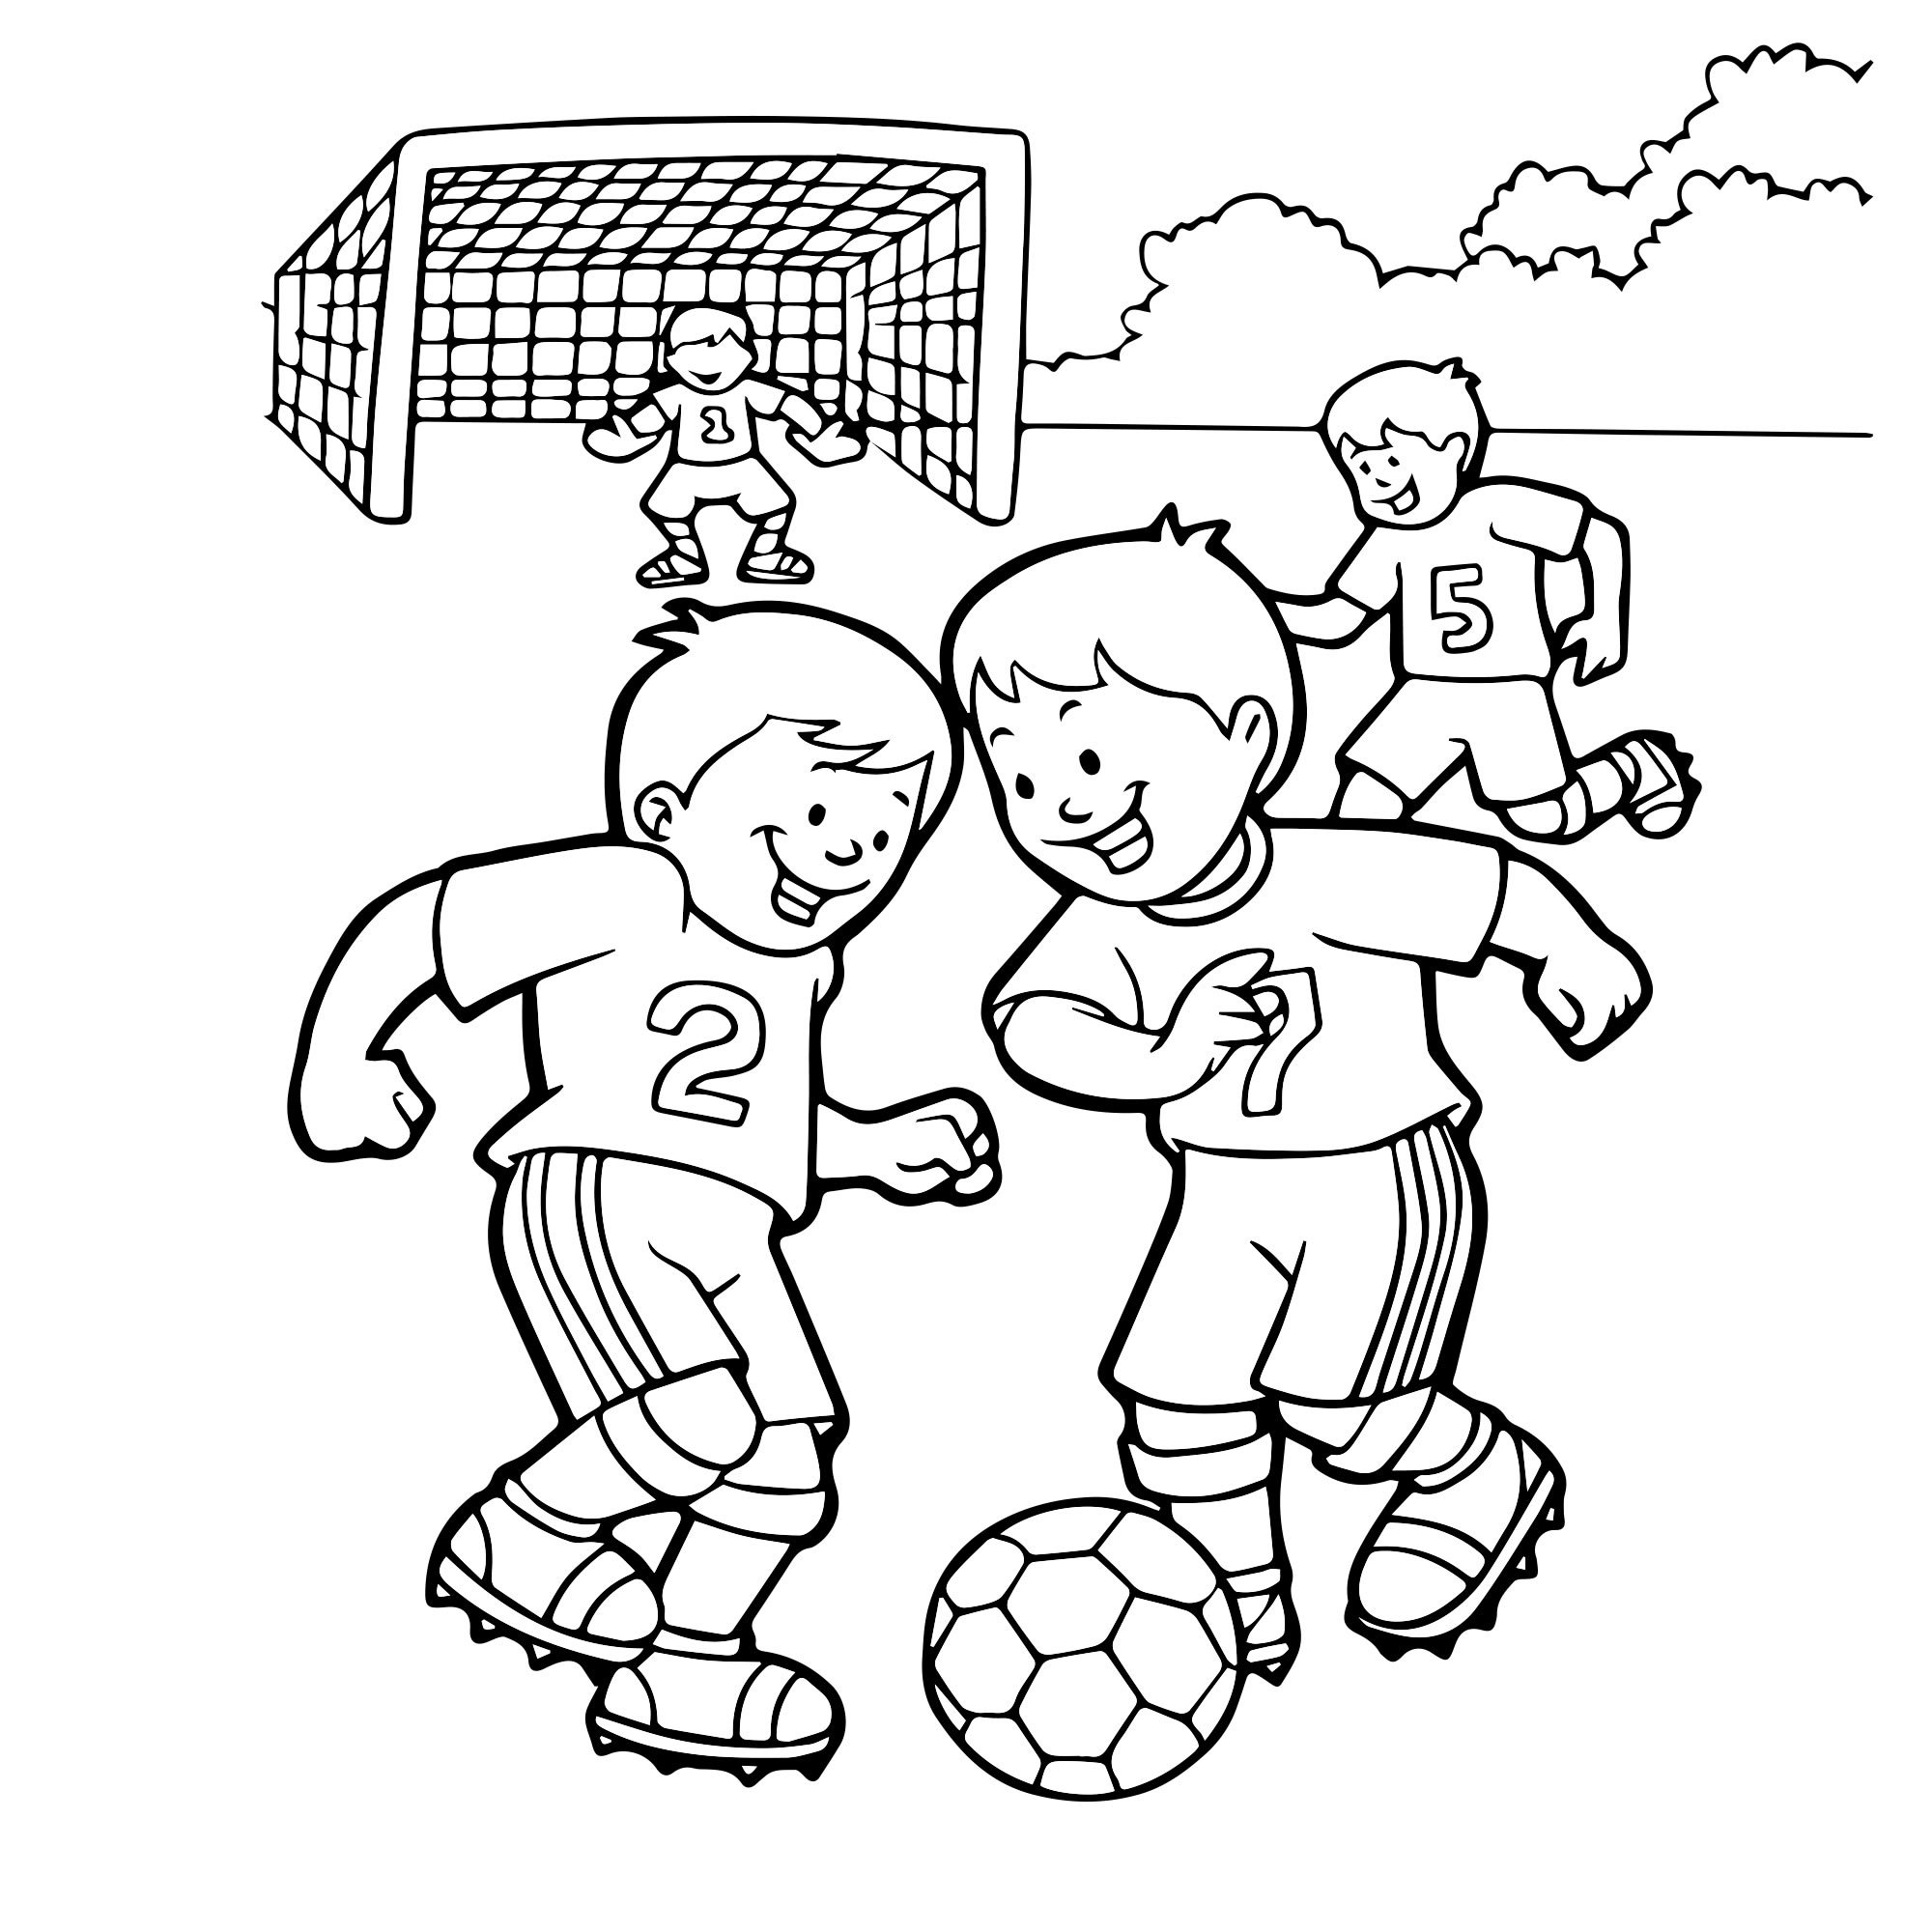 Нарисуй картинку играть. Раскраска футбол. Футбол раскраска для детей. Раскраска спорт для детей. Спорт картинки для детей раскраска.